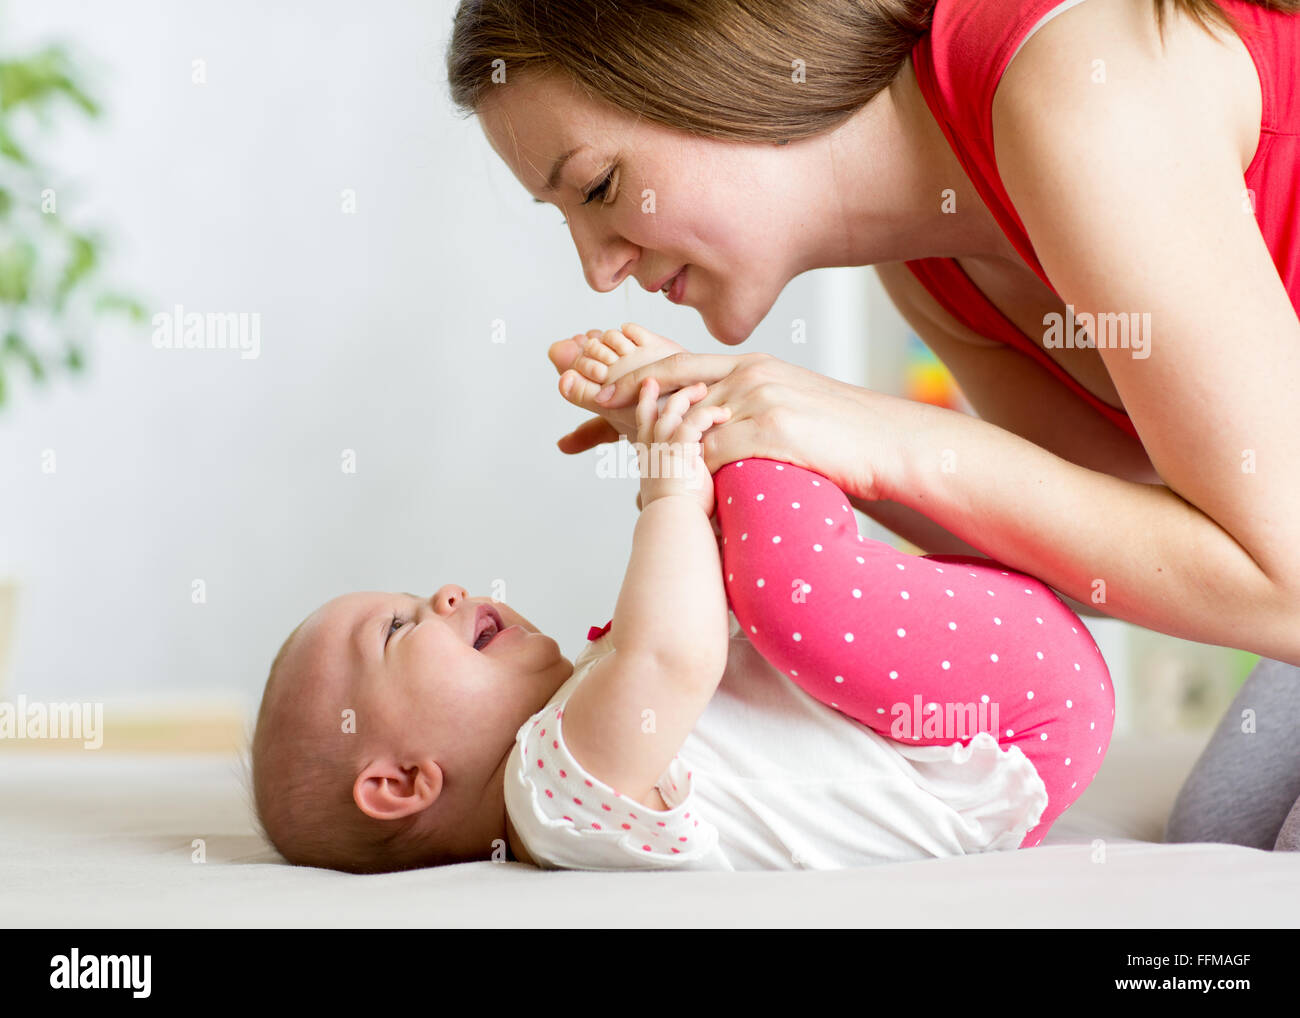 Jeune mère avec son enfant s'amusant passe-temps Banque D'Images